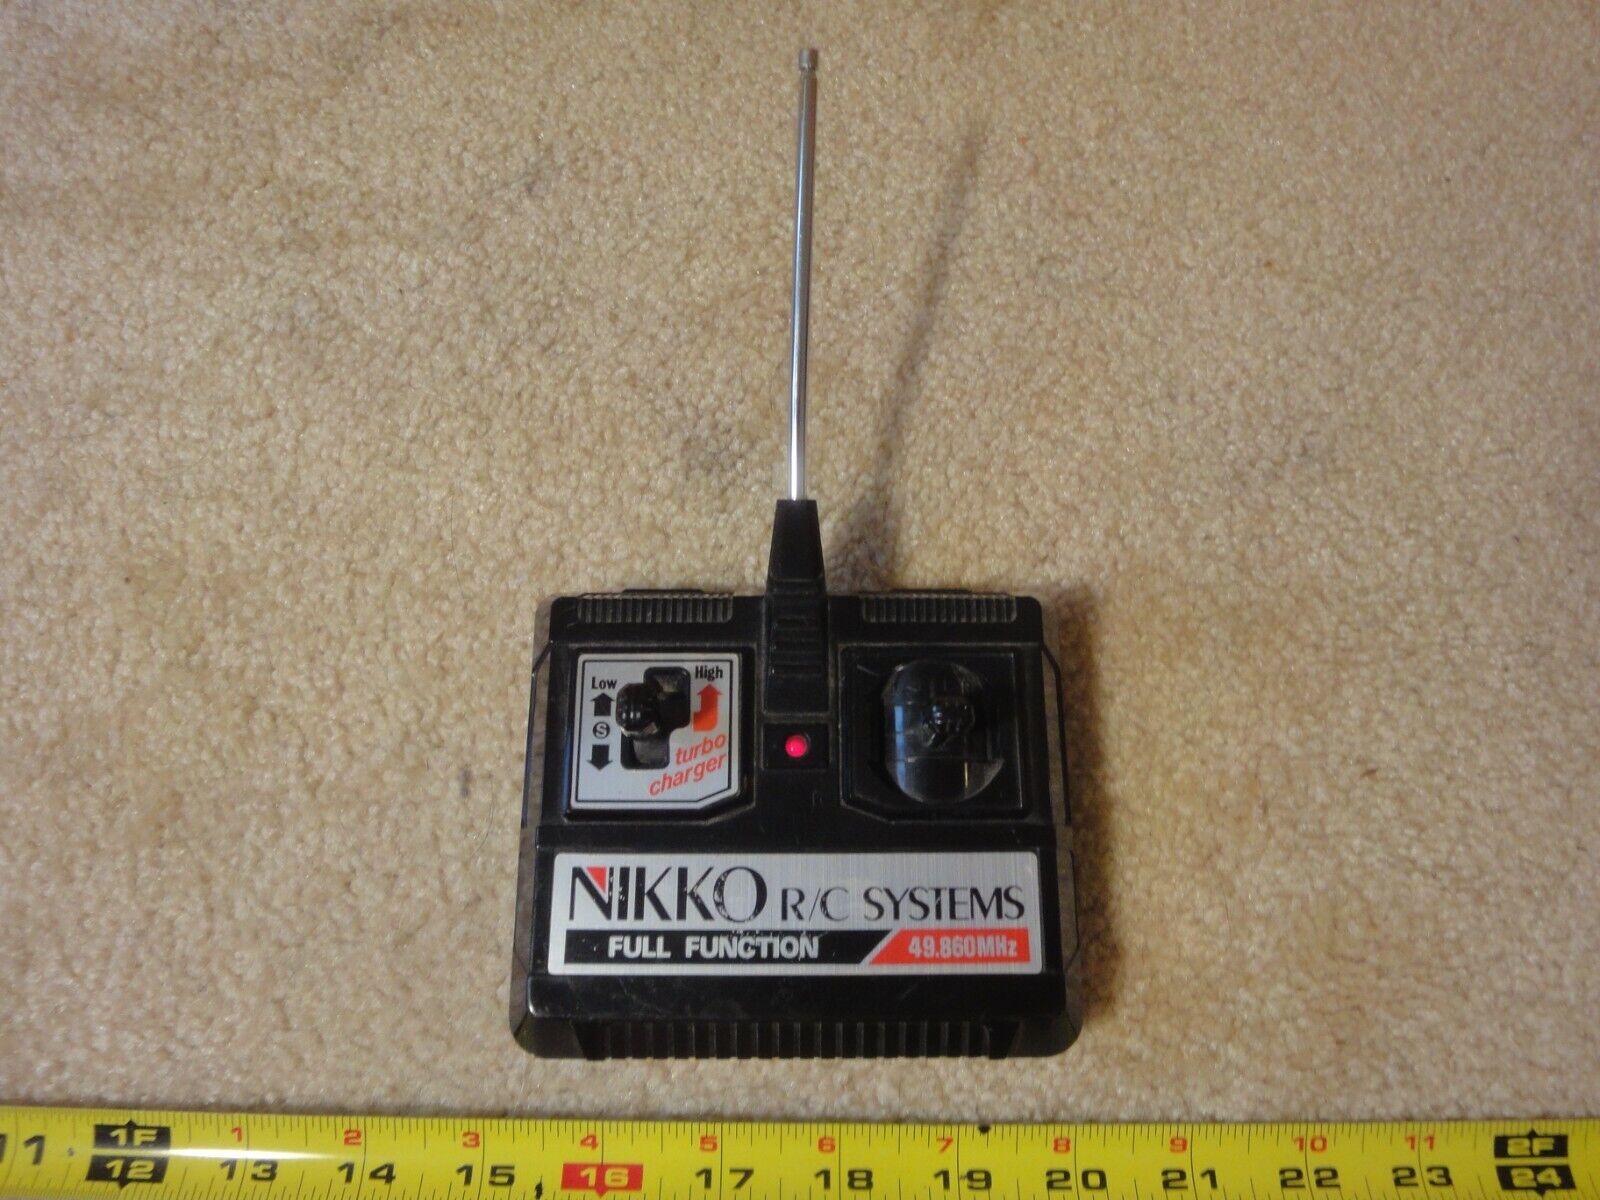 Nikko radio control, R/C car, truck 49.860 MHz transmitter, remote part, piece.